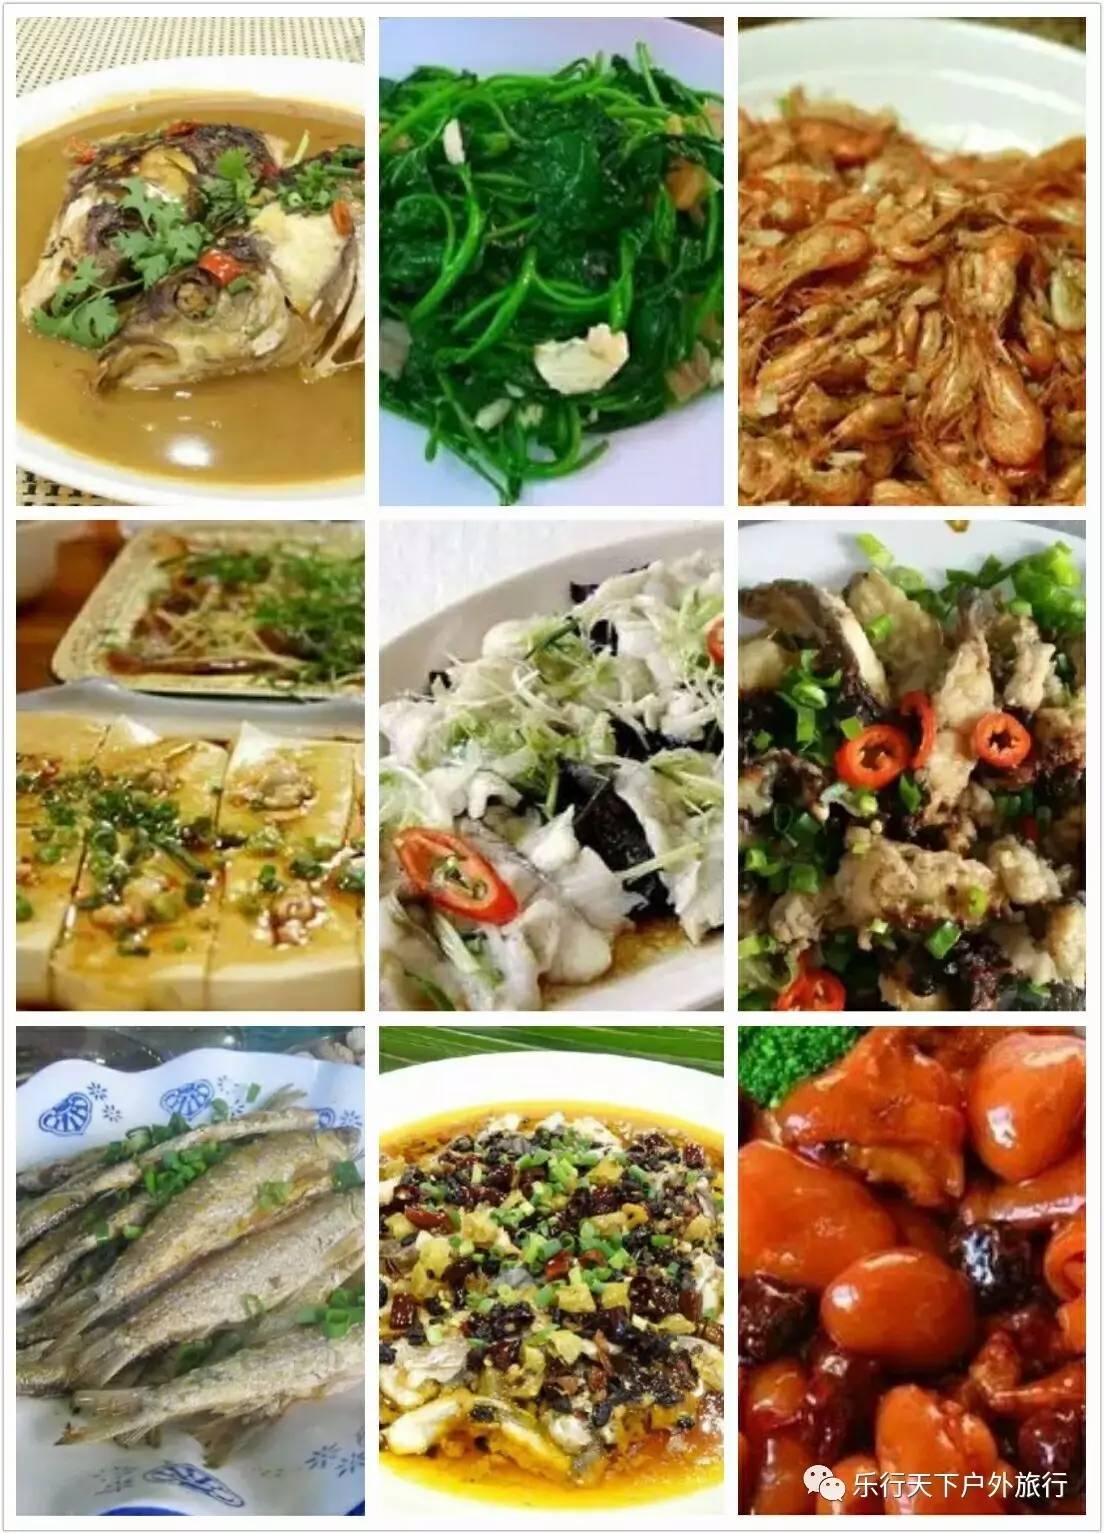 午餐于船上品尝"北江河鲜宴",亲口品尝清远鸡,北江鱼,凝碧虾的鲜美